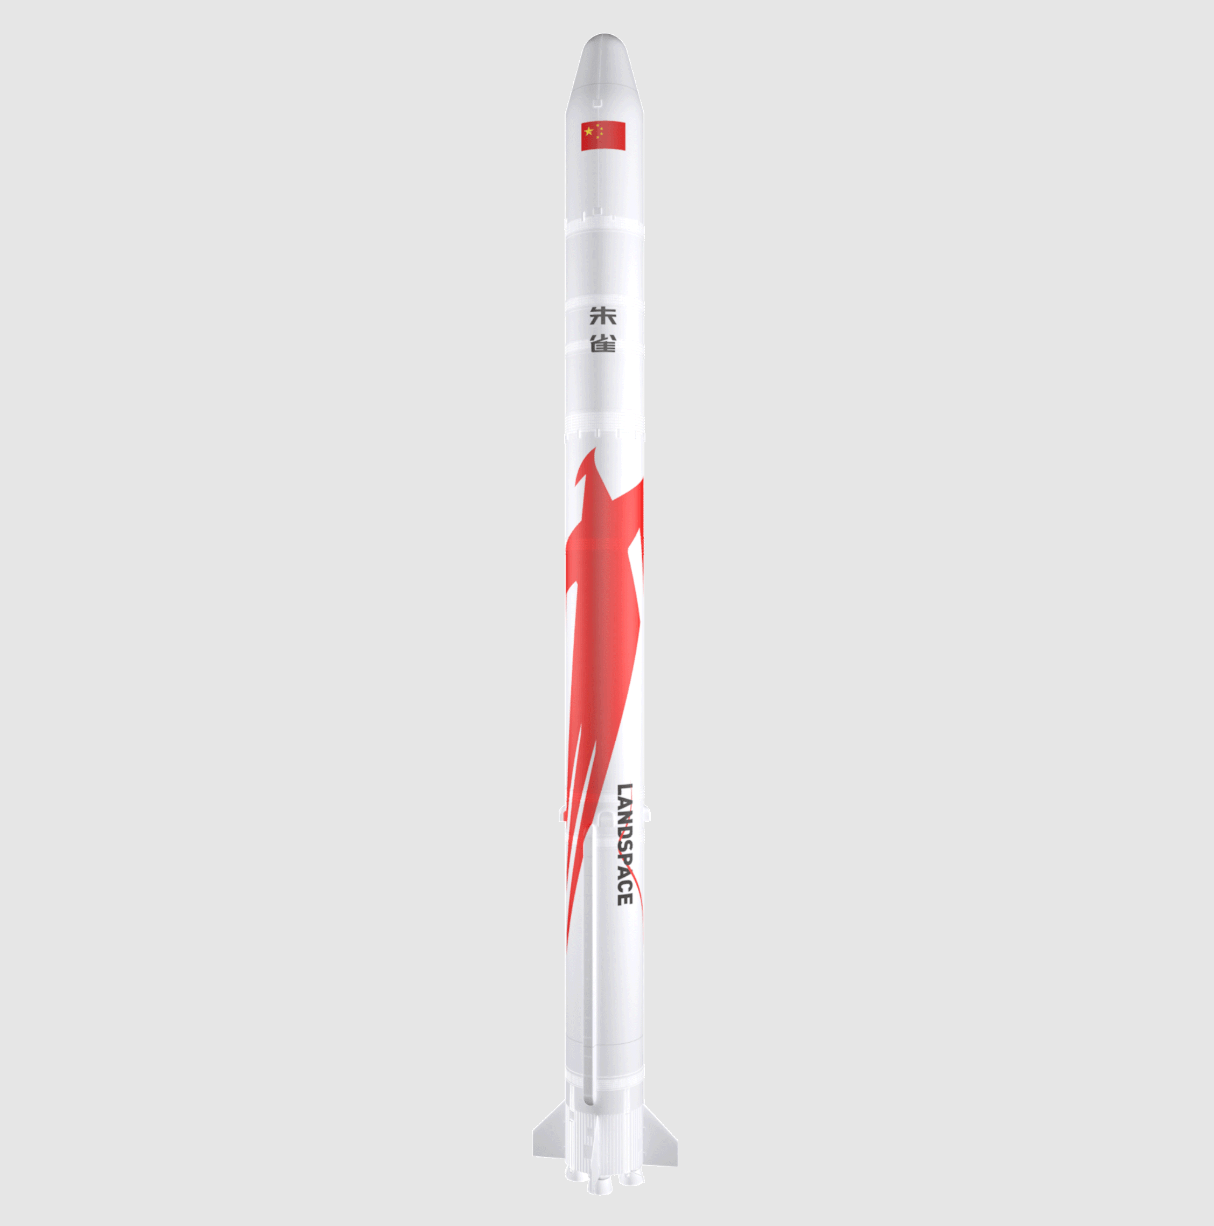 朱雀二号遥二火箭计划6月中下旬发射 ：总长为49.5米 起飞质量219吨